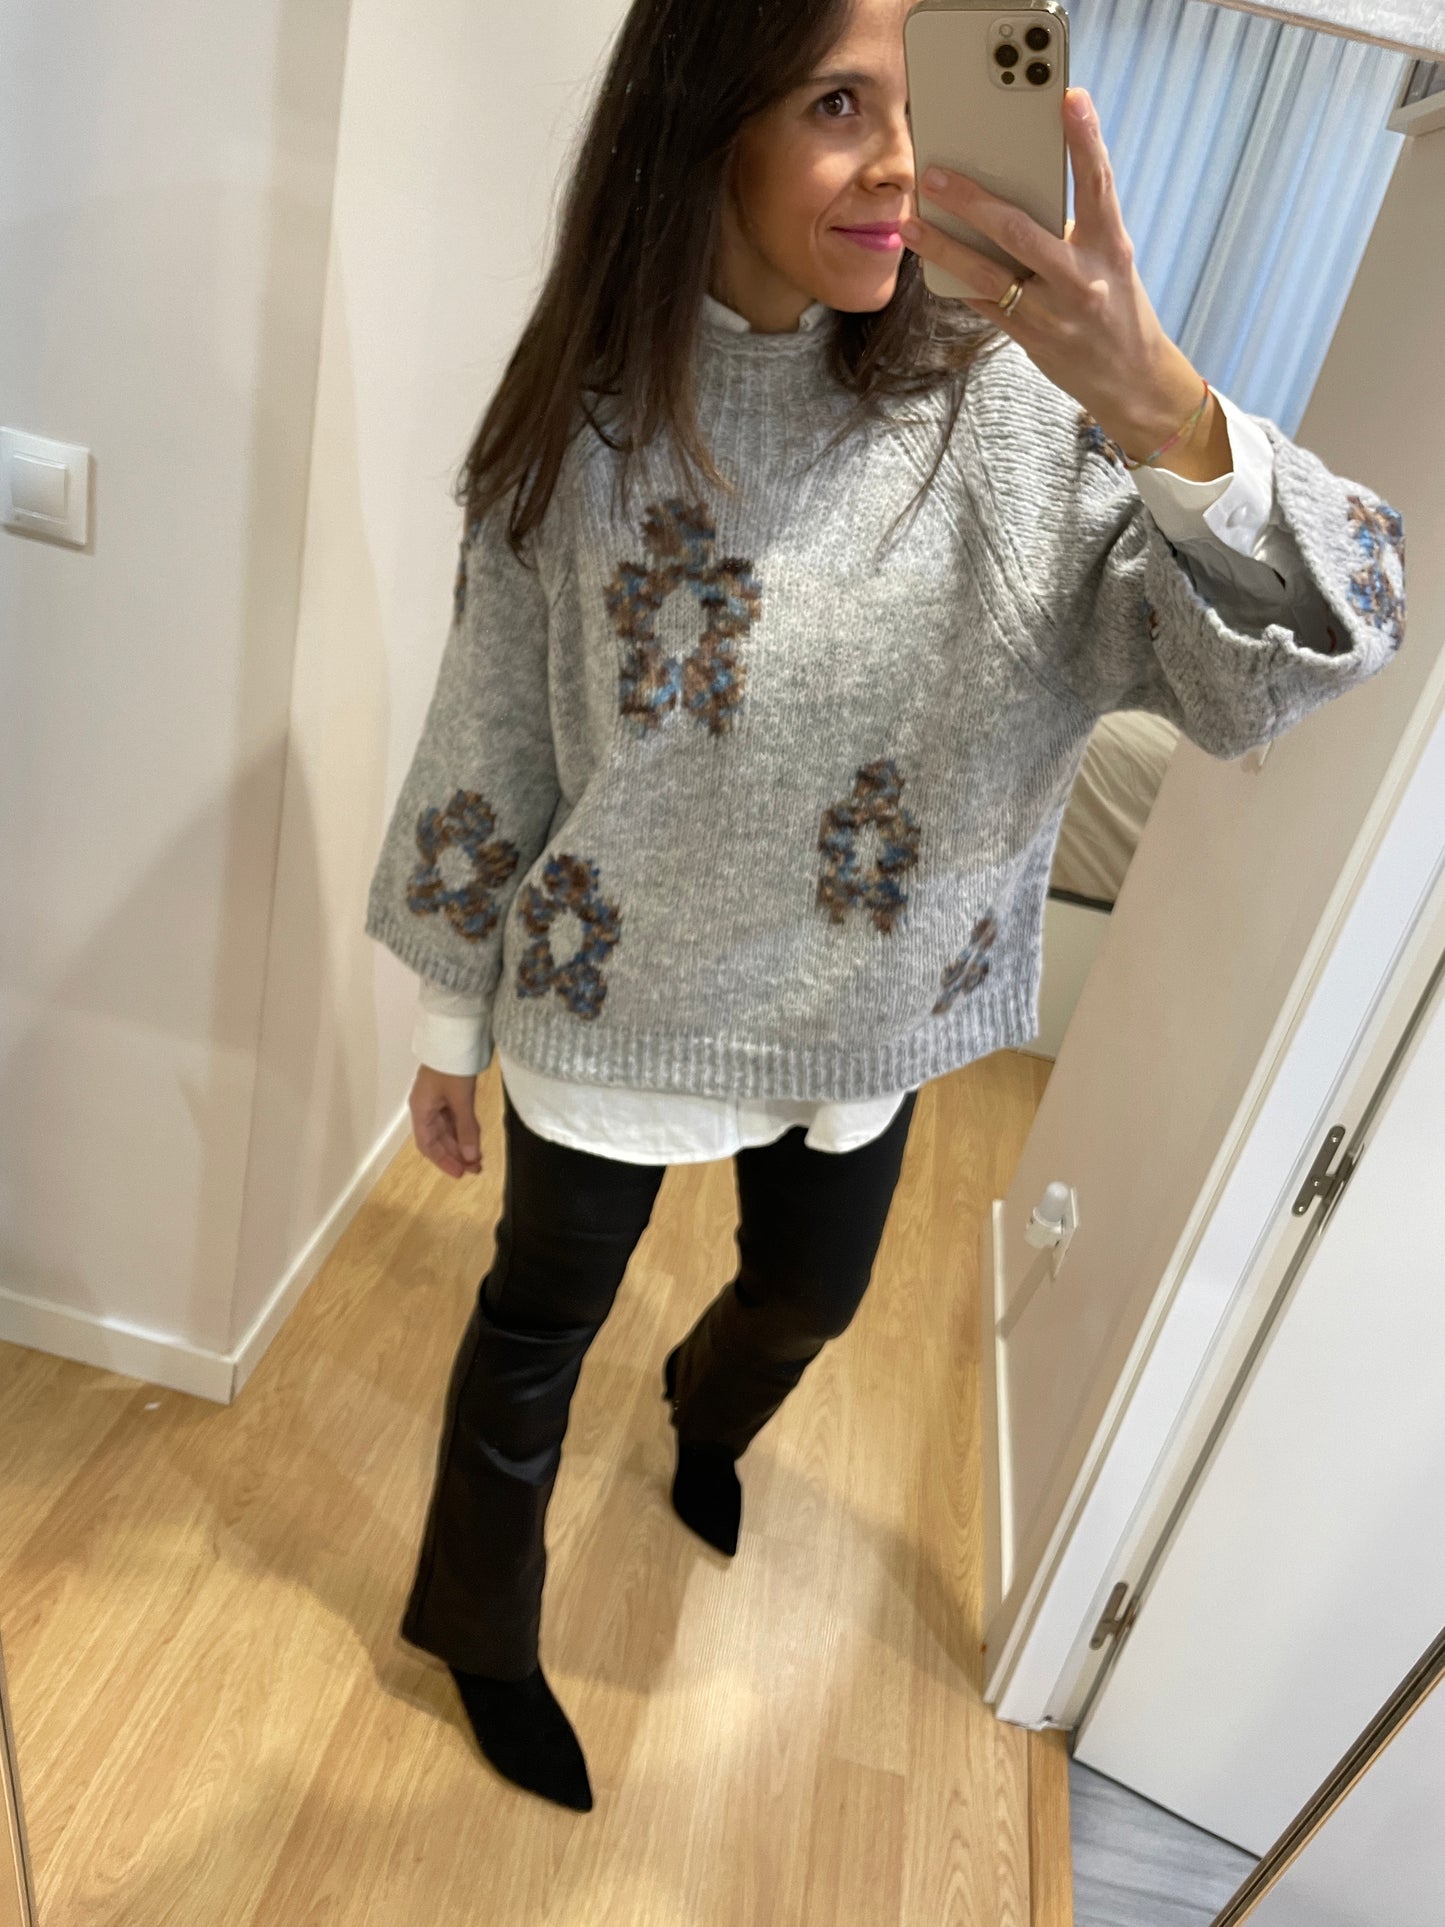 Marieta gray sweater